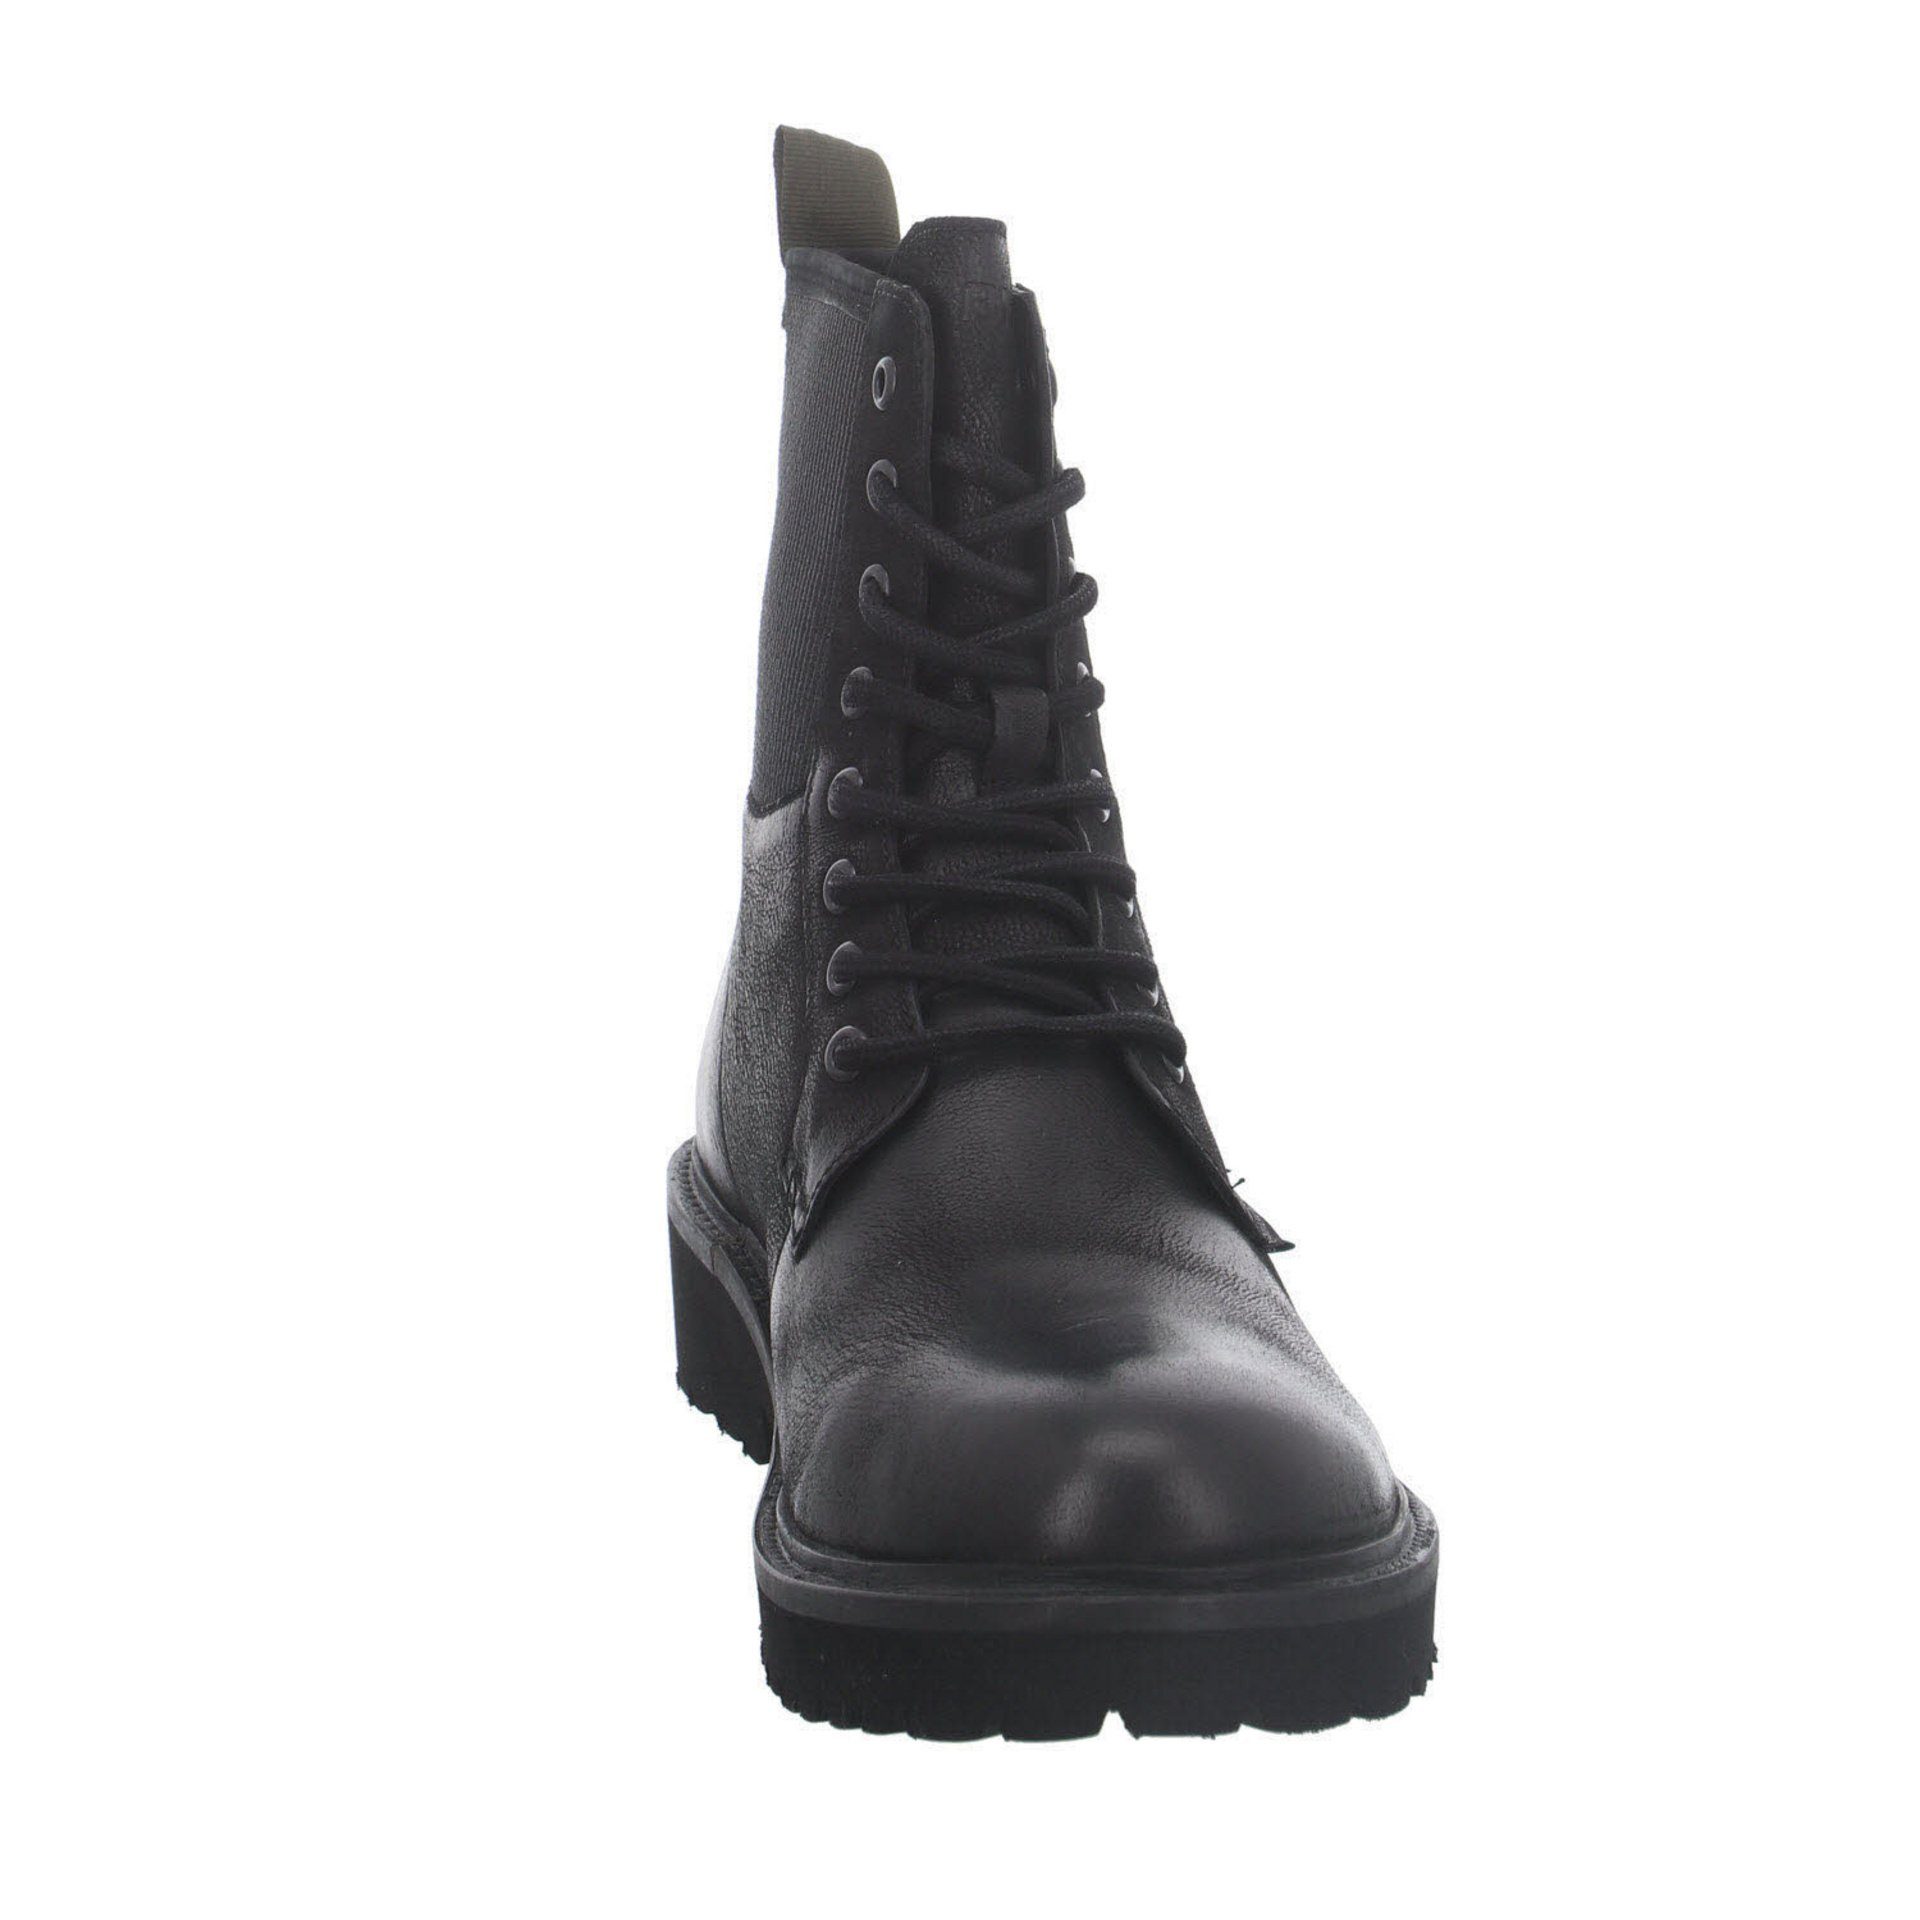 Schuhe Stiefeletten Blauer.USA Iron 01 Boots Leder-/Textilkombination uni Ankleboots